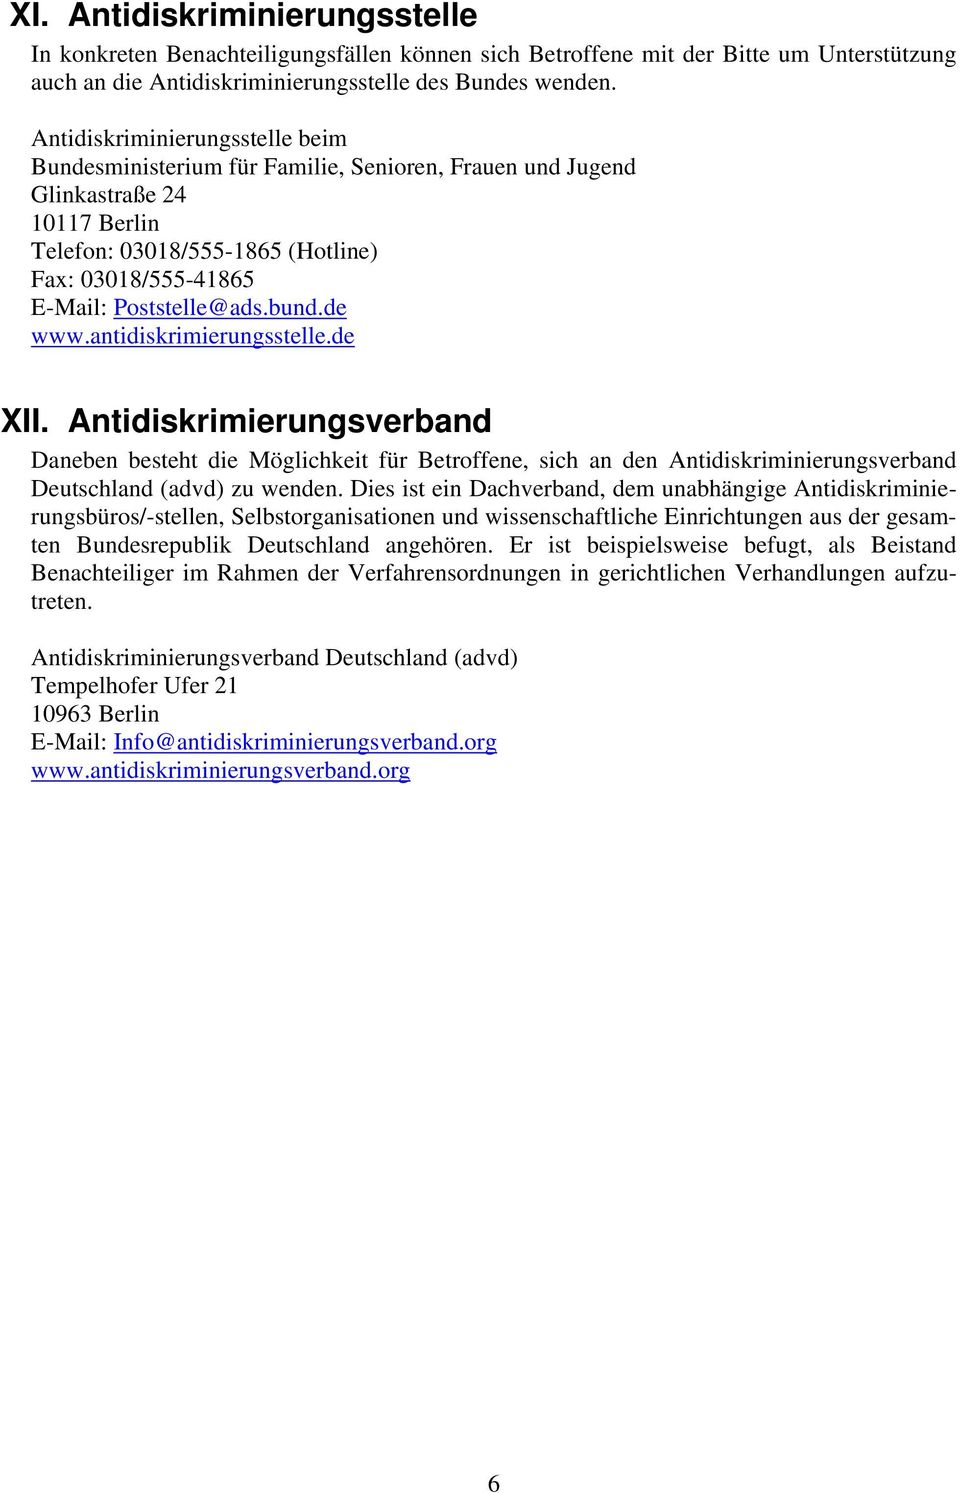 bund.de www.antidiskrimierungsstelle.de XII. Antidiskrimierungsverband Daneben besteht die Möglichkeit für Betroffene, sich an den Antidiskriminierungsverband Deutschland (advd) zu wenden.